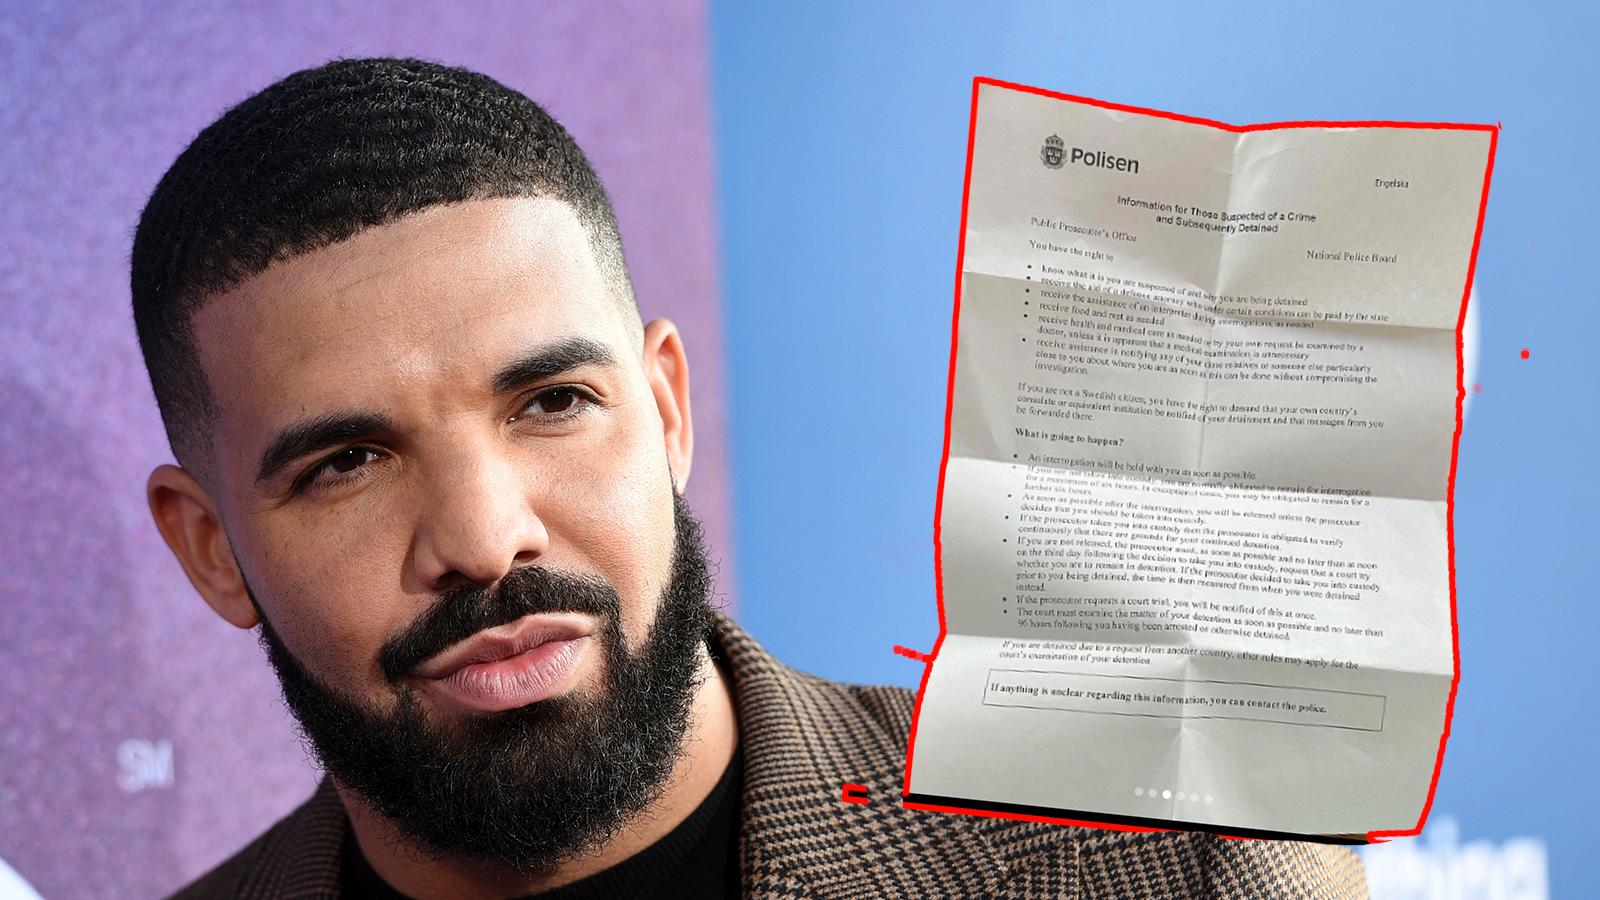 Drake lade ut ett informationsbrev från polisen på sin Instagram.